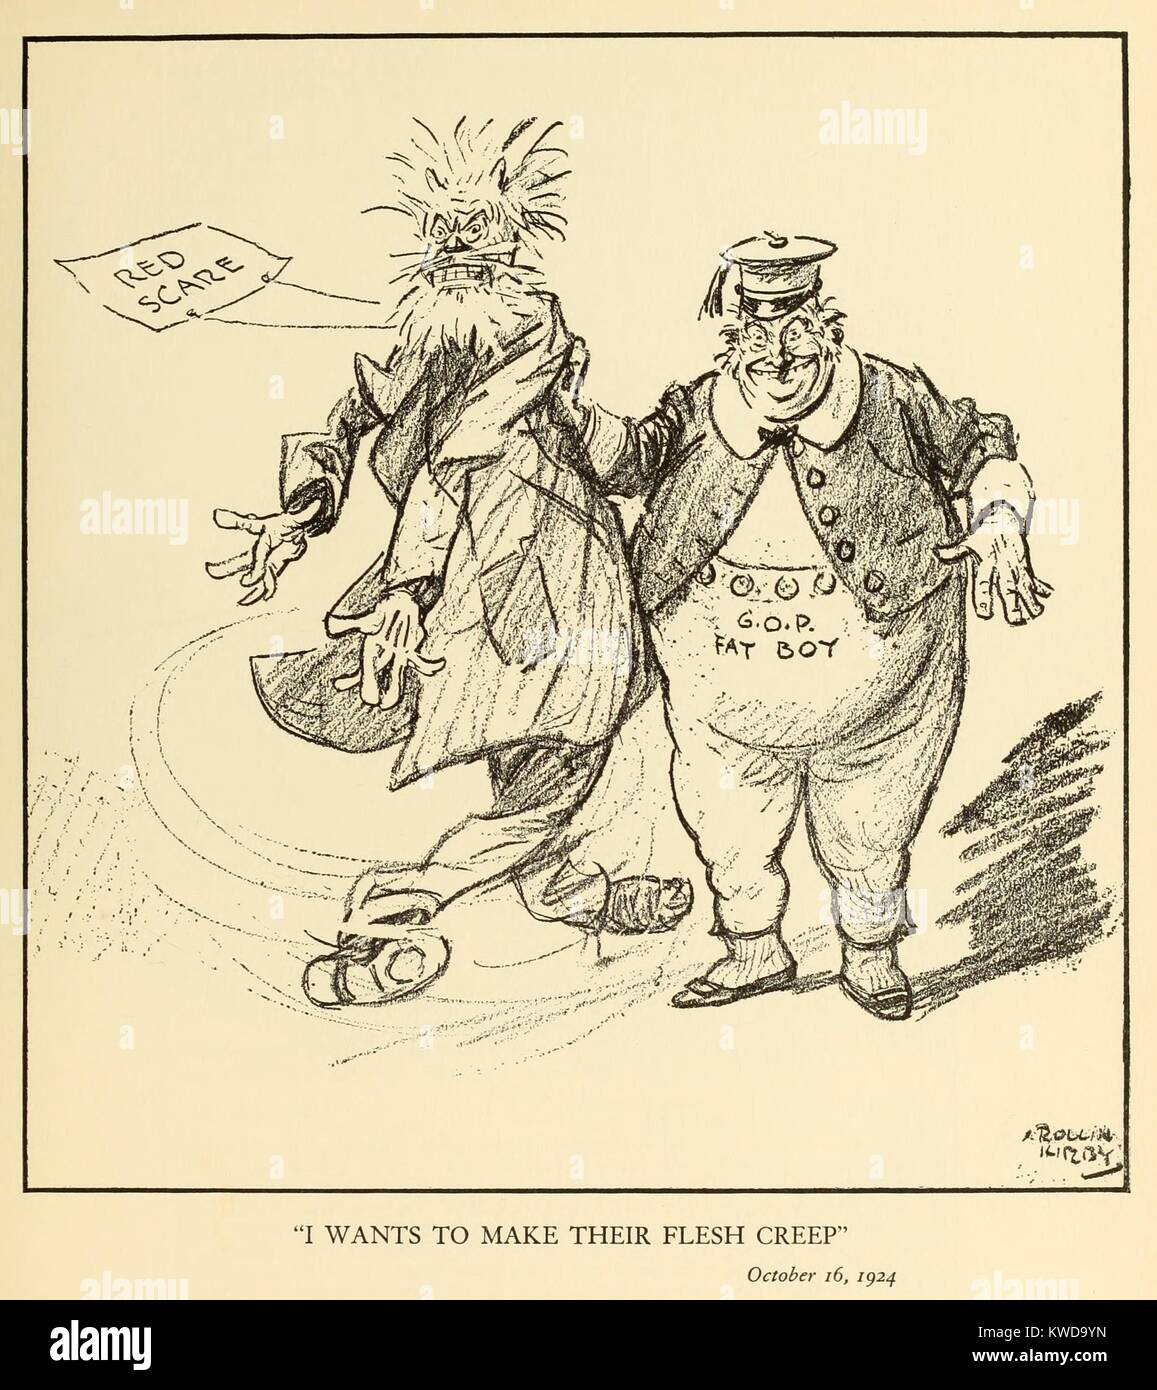 Mi vuole rendere la loro carne di creep. Cartoon politico che mostra un 'G.O.P. Fatboy' sventolare un minaccioso pupazzo che rappresentano il rosso spavento. Da New York World fumettista, Kirby Rollin, 24 ottobre, 1920. (BSLOC_2015_17_242) Foto Stock